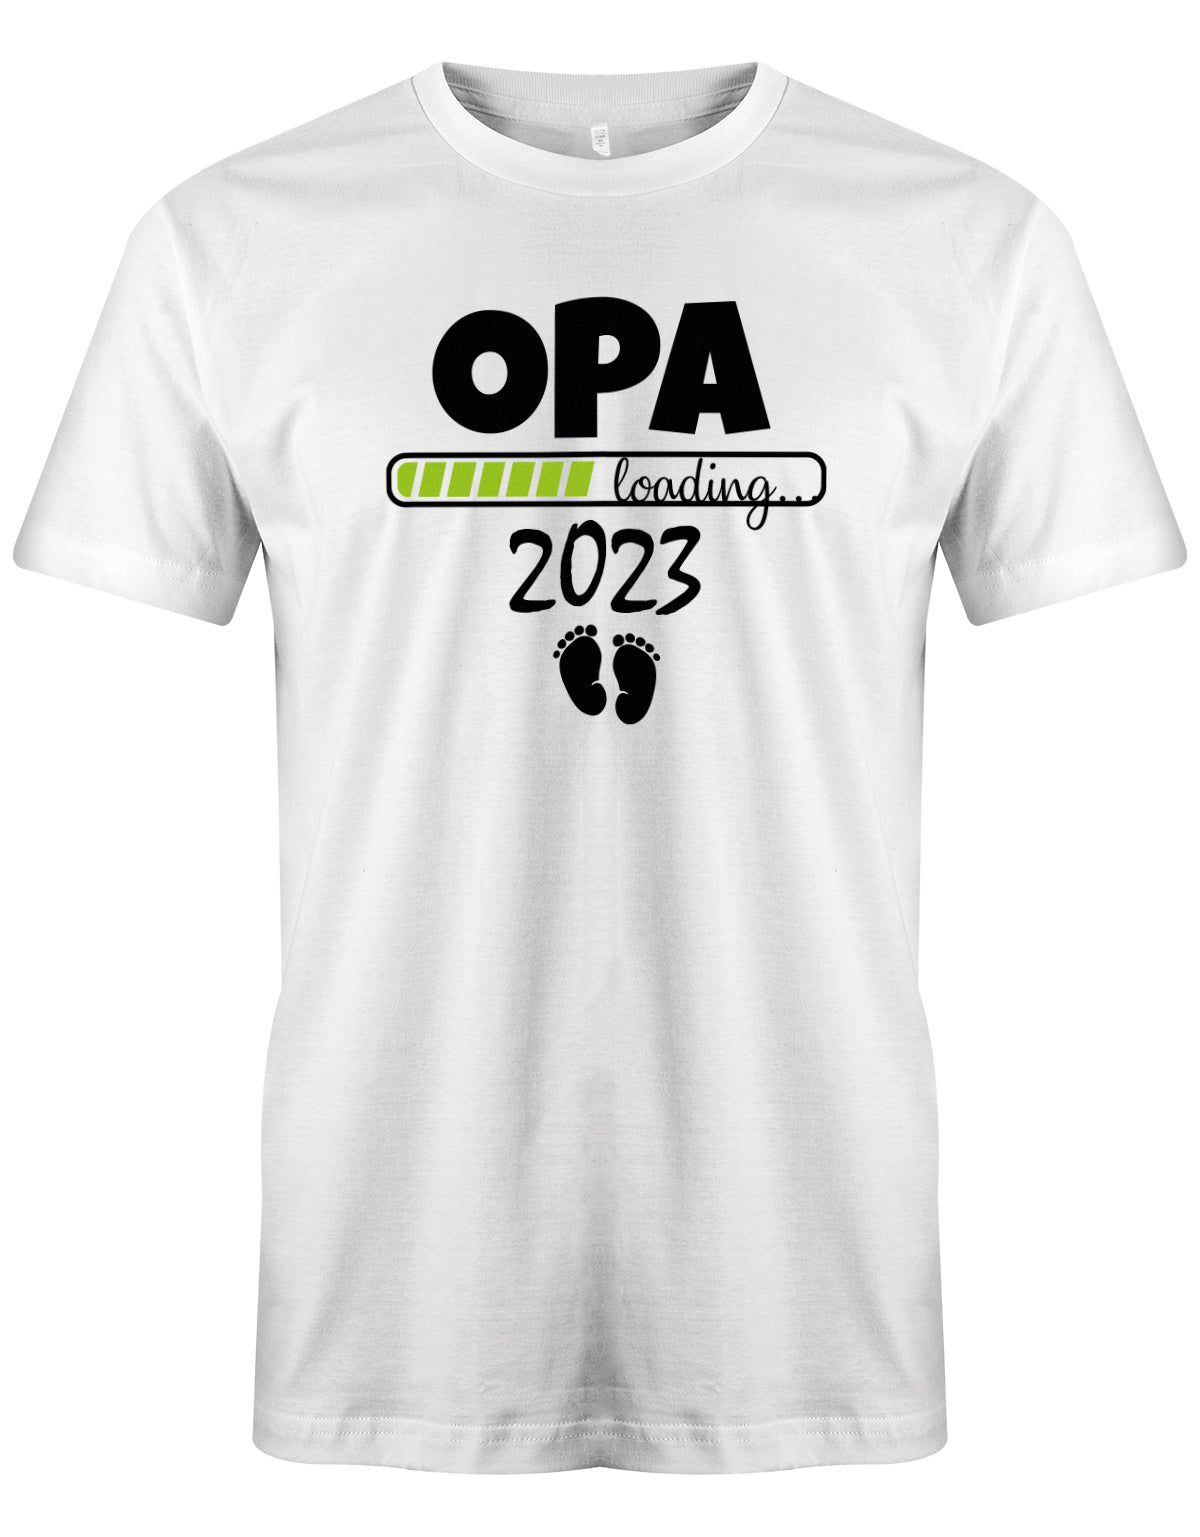 Opa T-Shirt Spruch für werdenden Opa - Opa Loading 2023 Balken lädt. Fußabdrücke Baby. Weiss